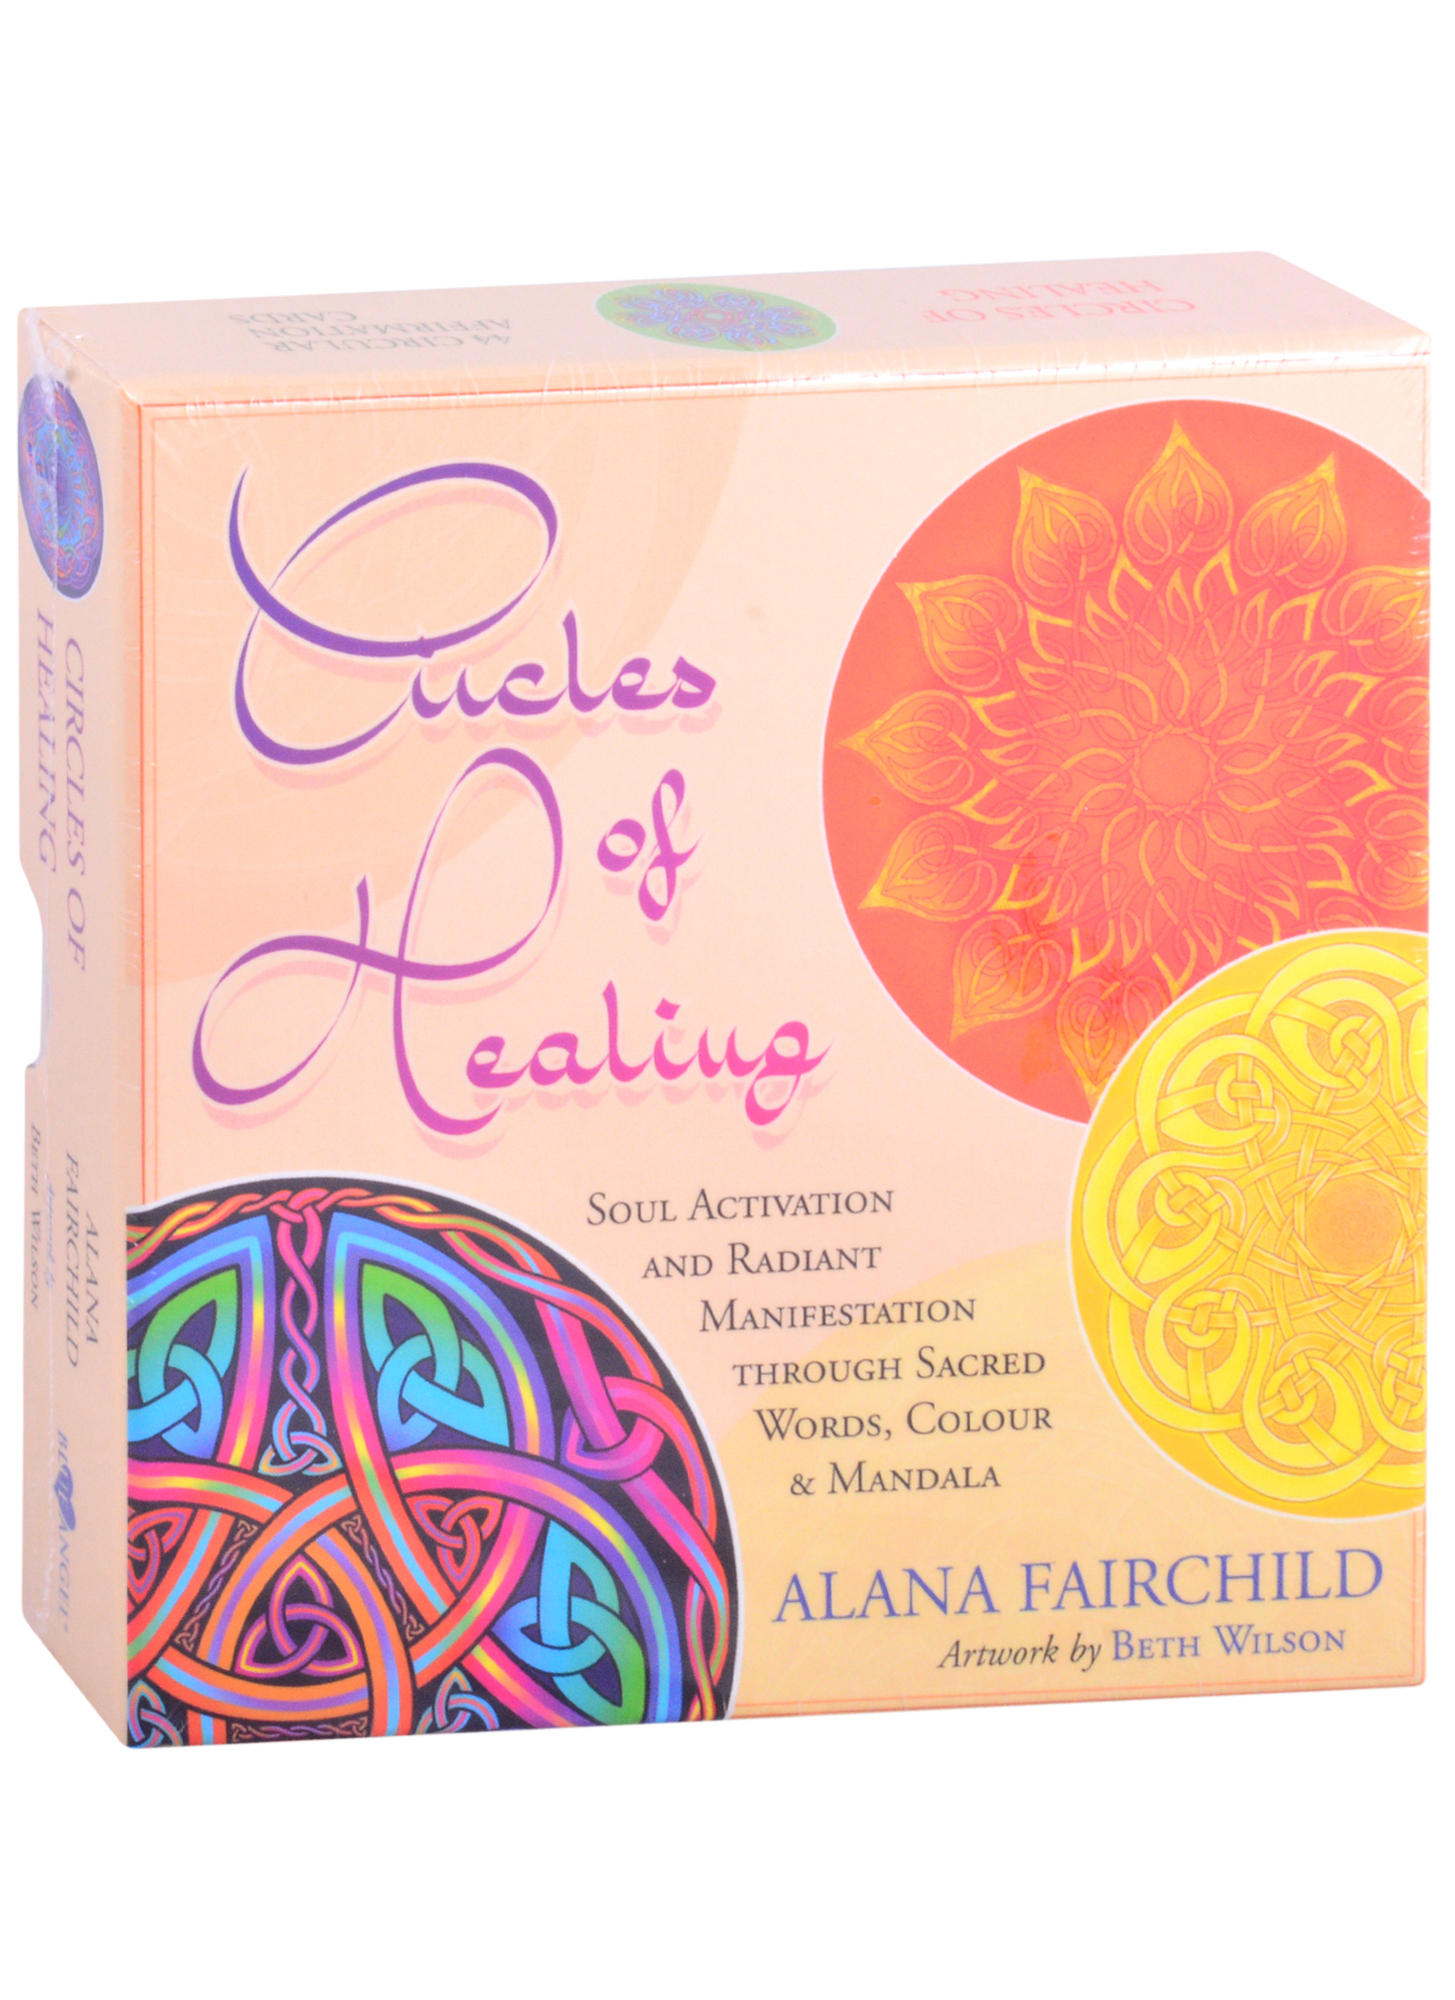 Фэрчайлд Алана Circles of Healing